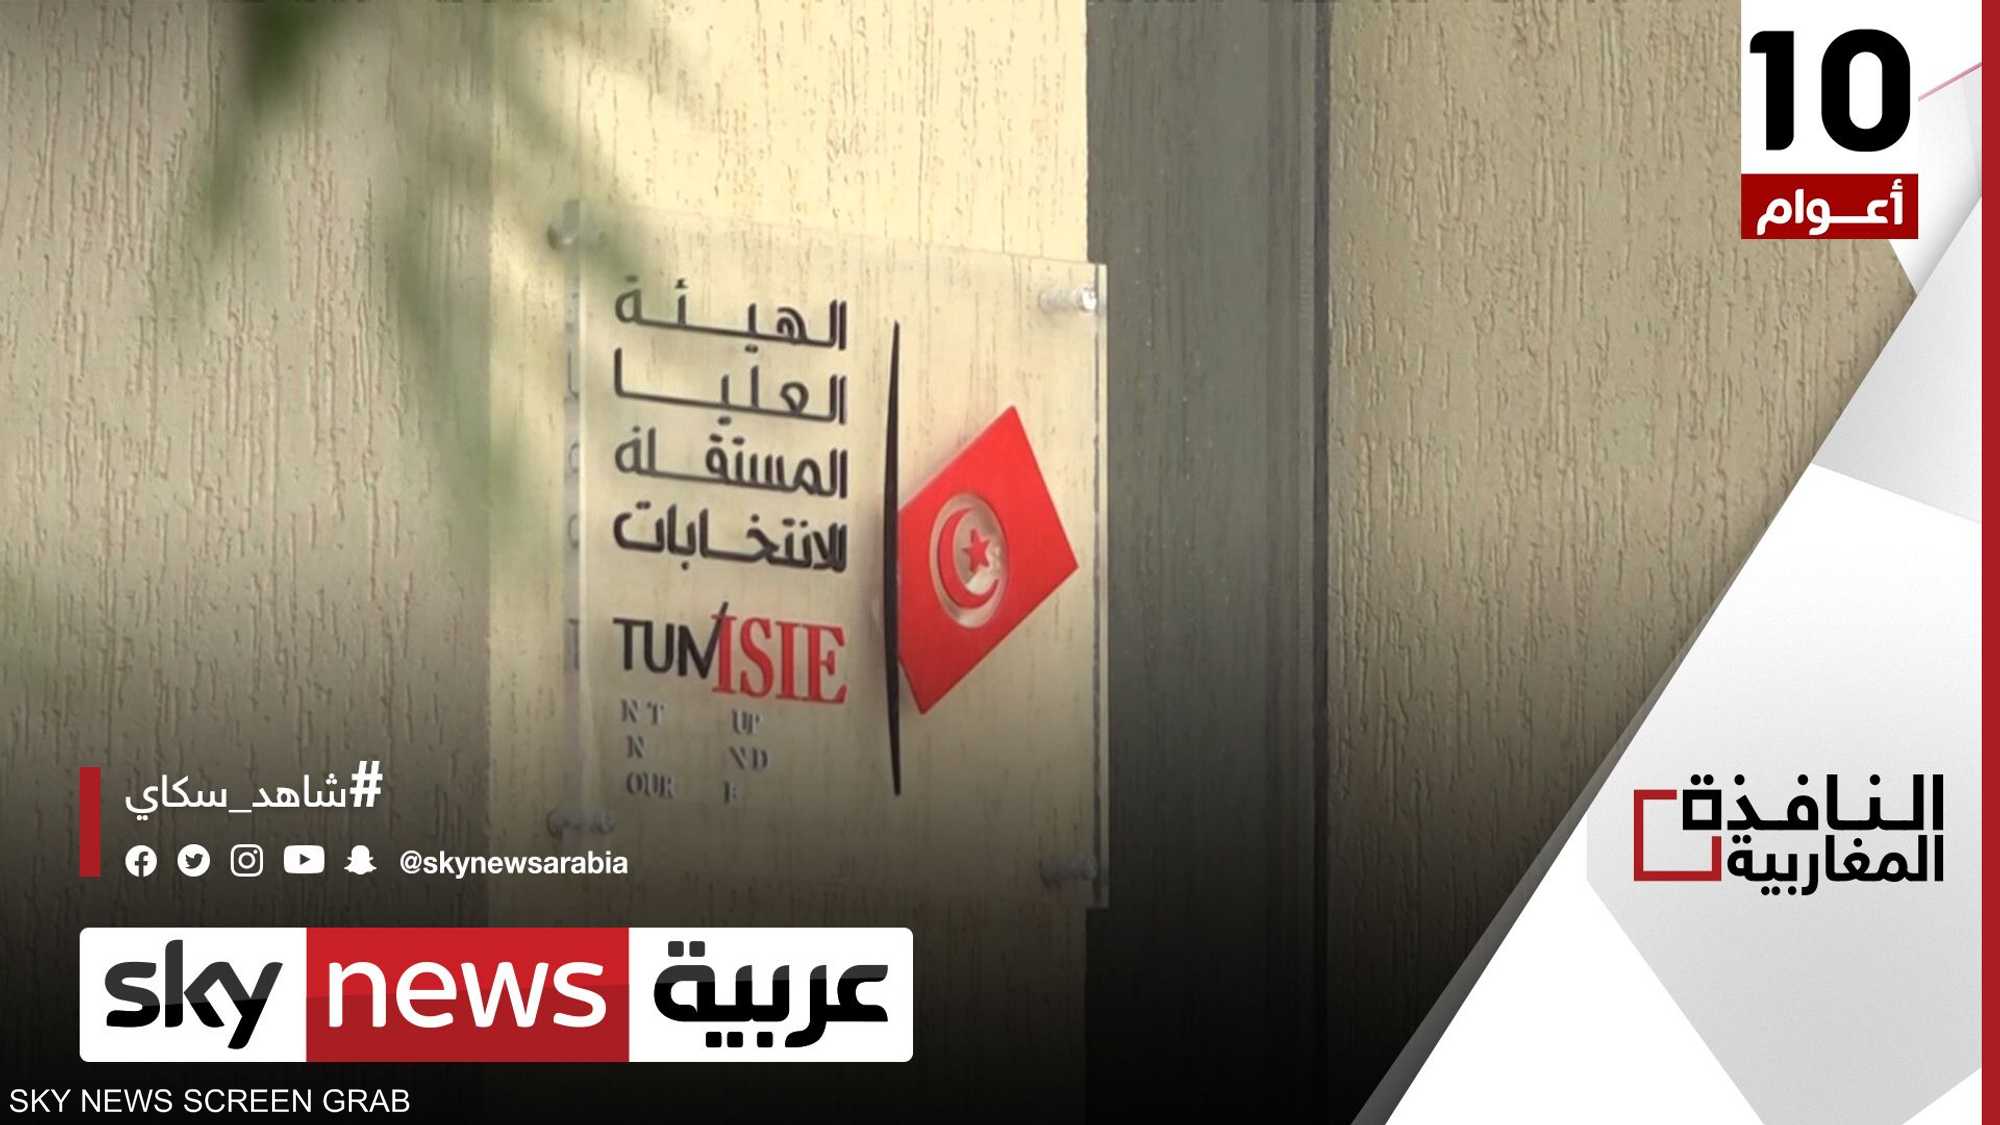 تعيين أعضاء بهيئة الانتخابات بتونس يثير الجدل